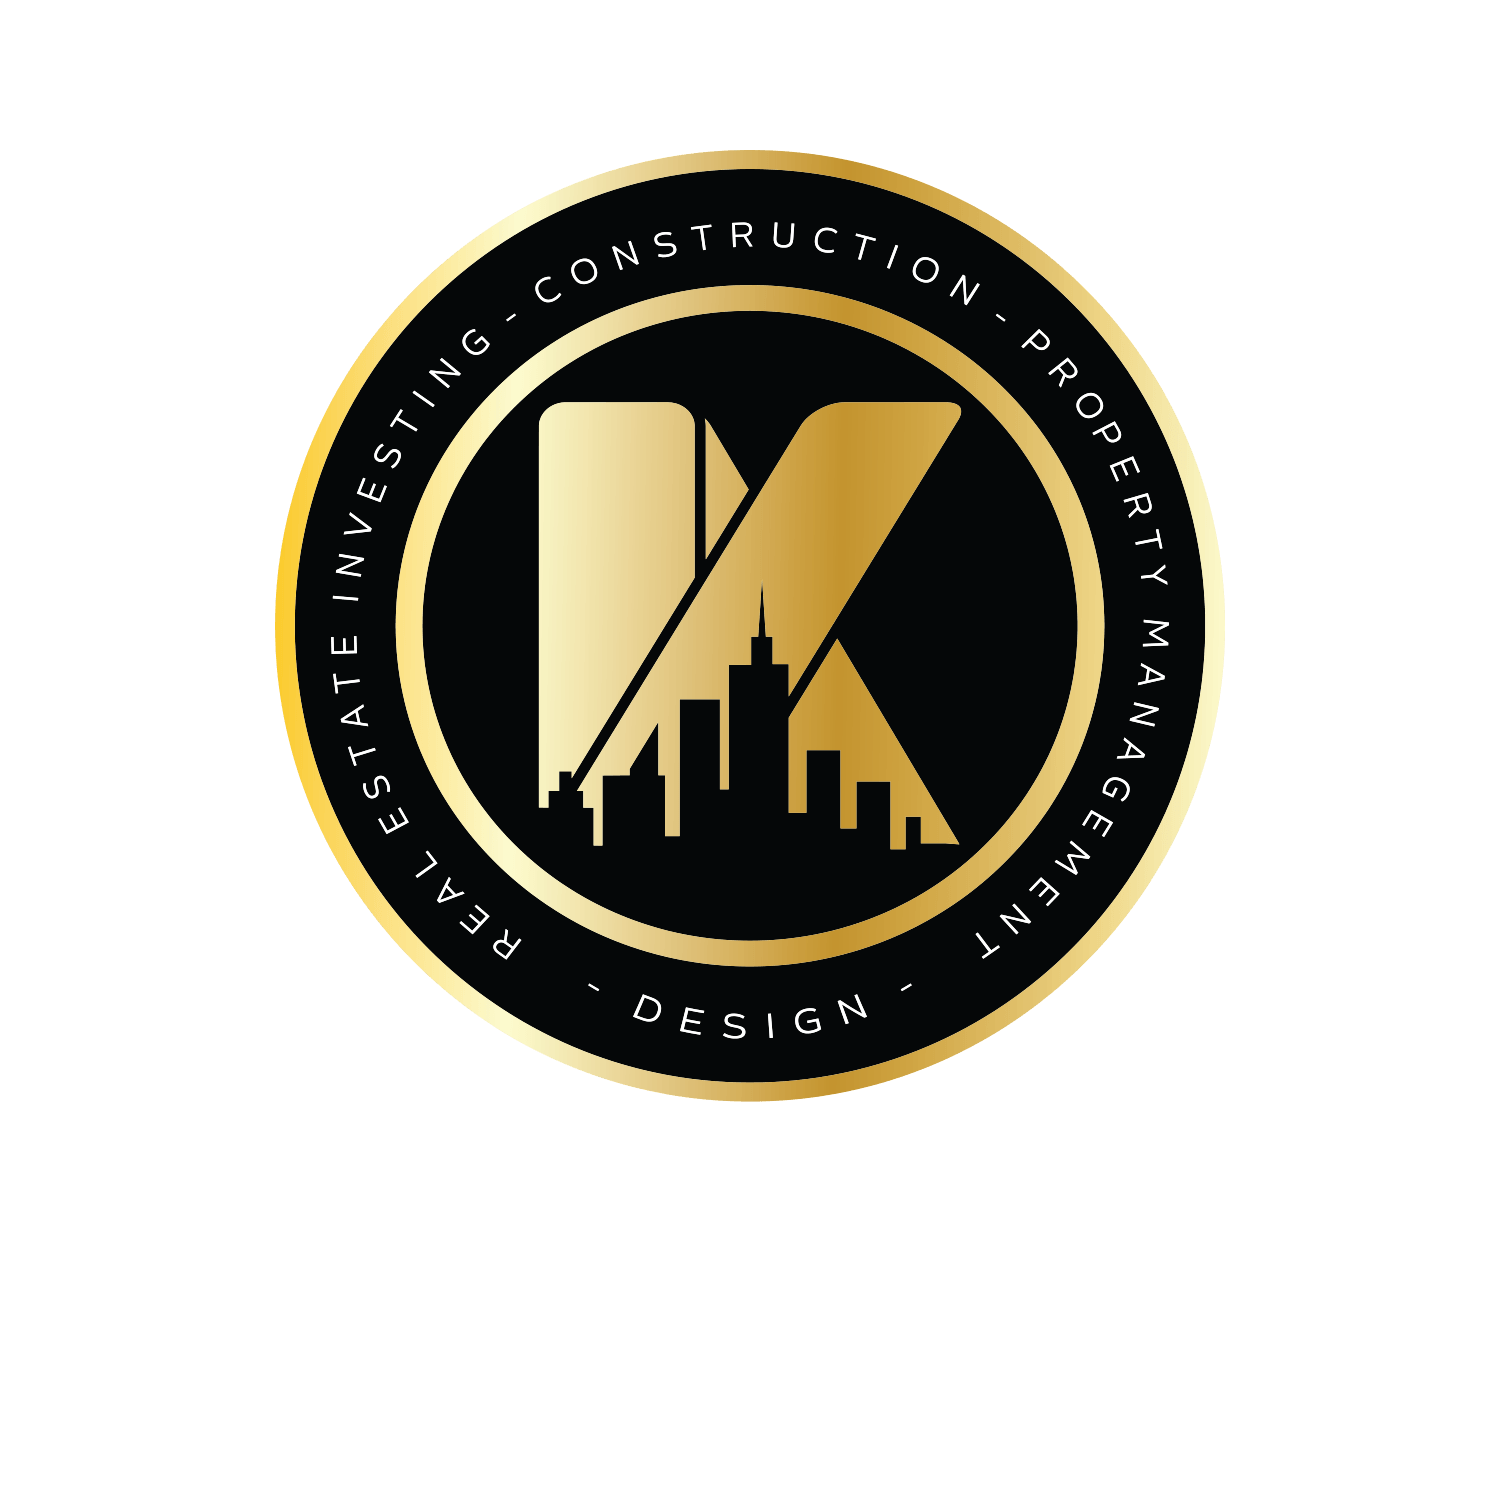 About Kingston Property Management Lexington, KY